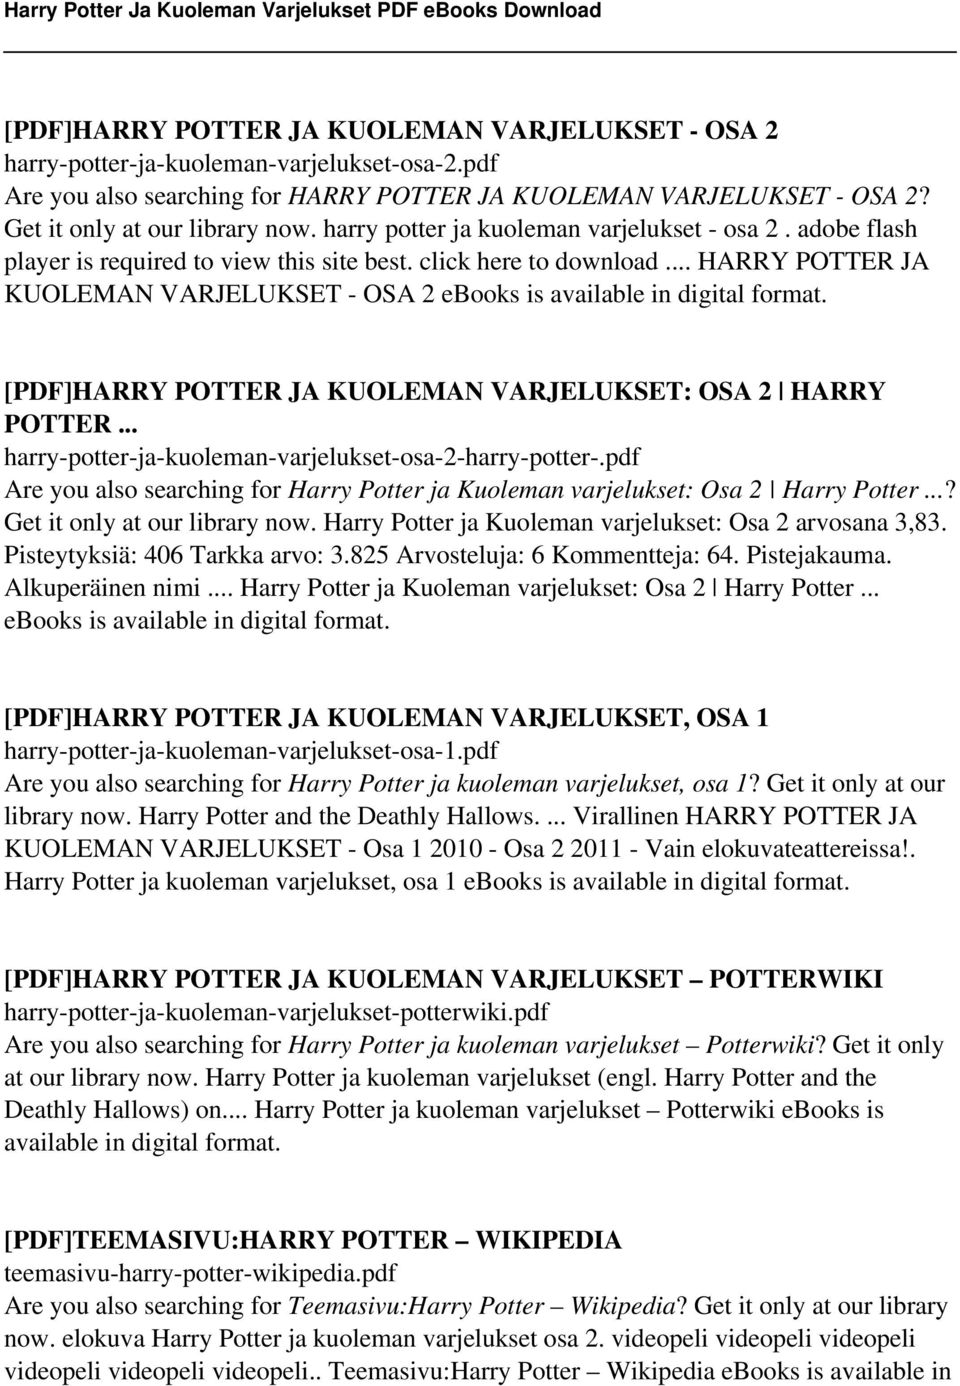 .. HARRY POTTER JA KUOLEMAN VARJELUKSET - OSA 2 ebooks is [PDF]HARRY POTTER JA KUOLEMAN VARJELUKSET: OSA 2 HARRY POTTER... harry-potter-ja-kuoleman-varjelukset-osa-2-harry-potter-.